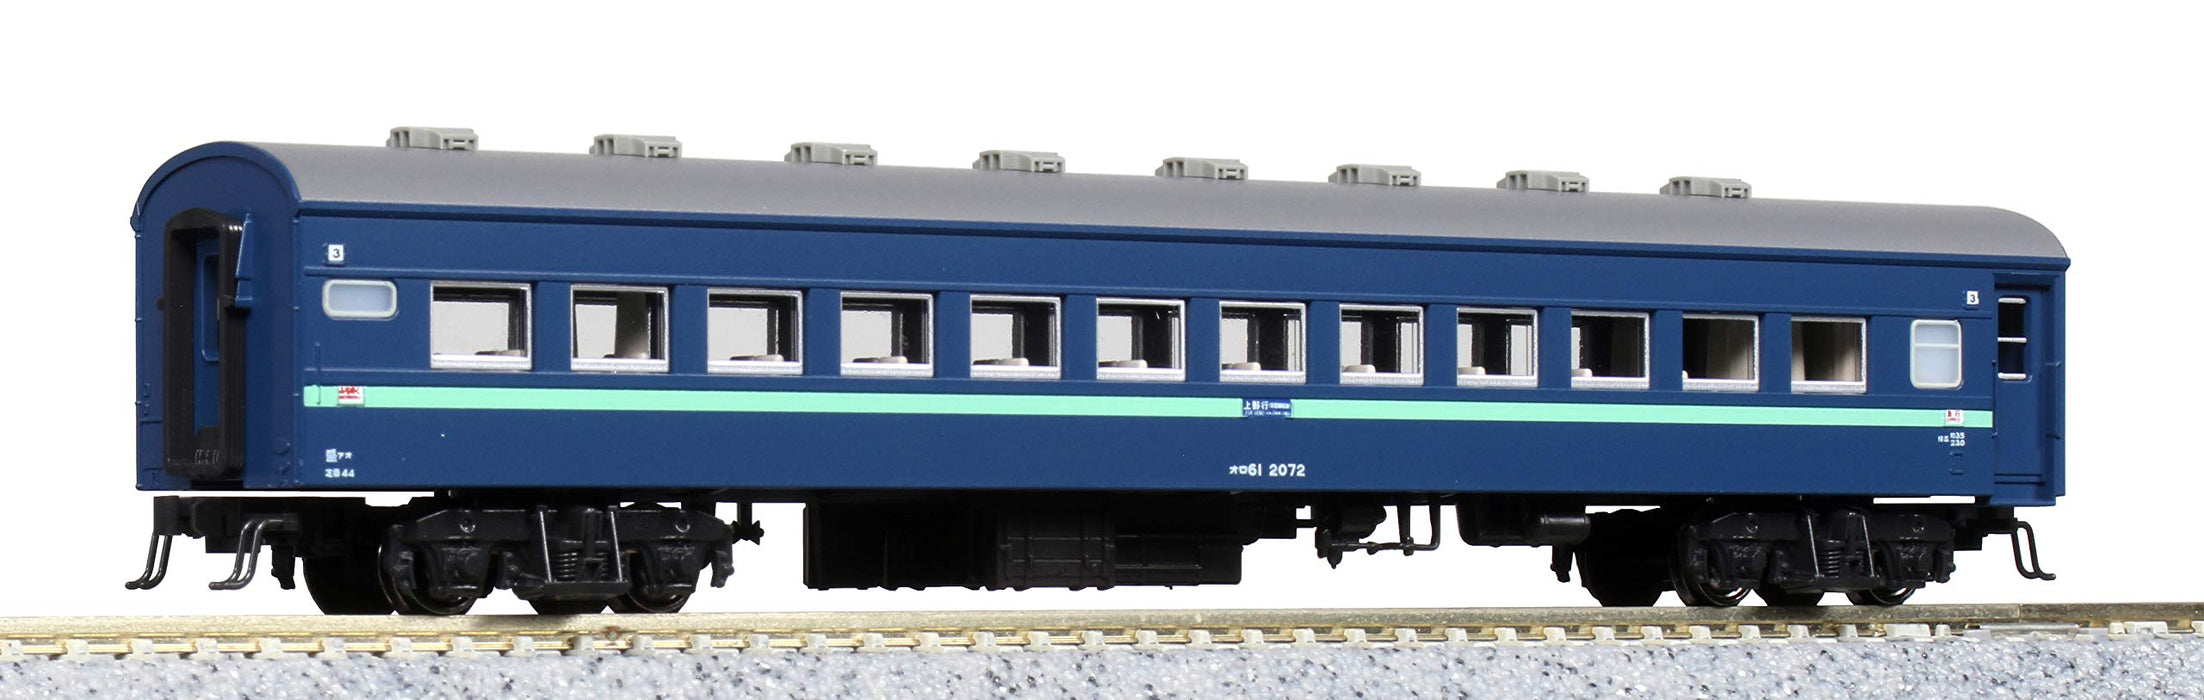 Kato N Gauge 7-Car Basic Set - 43 Series Express Michinoku Model 10-1546 Railway Passenger Car